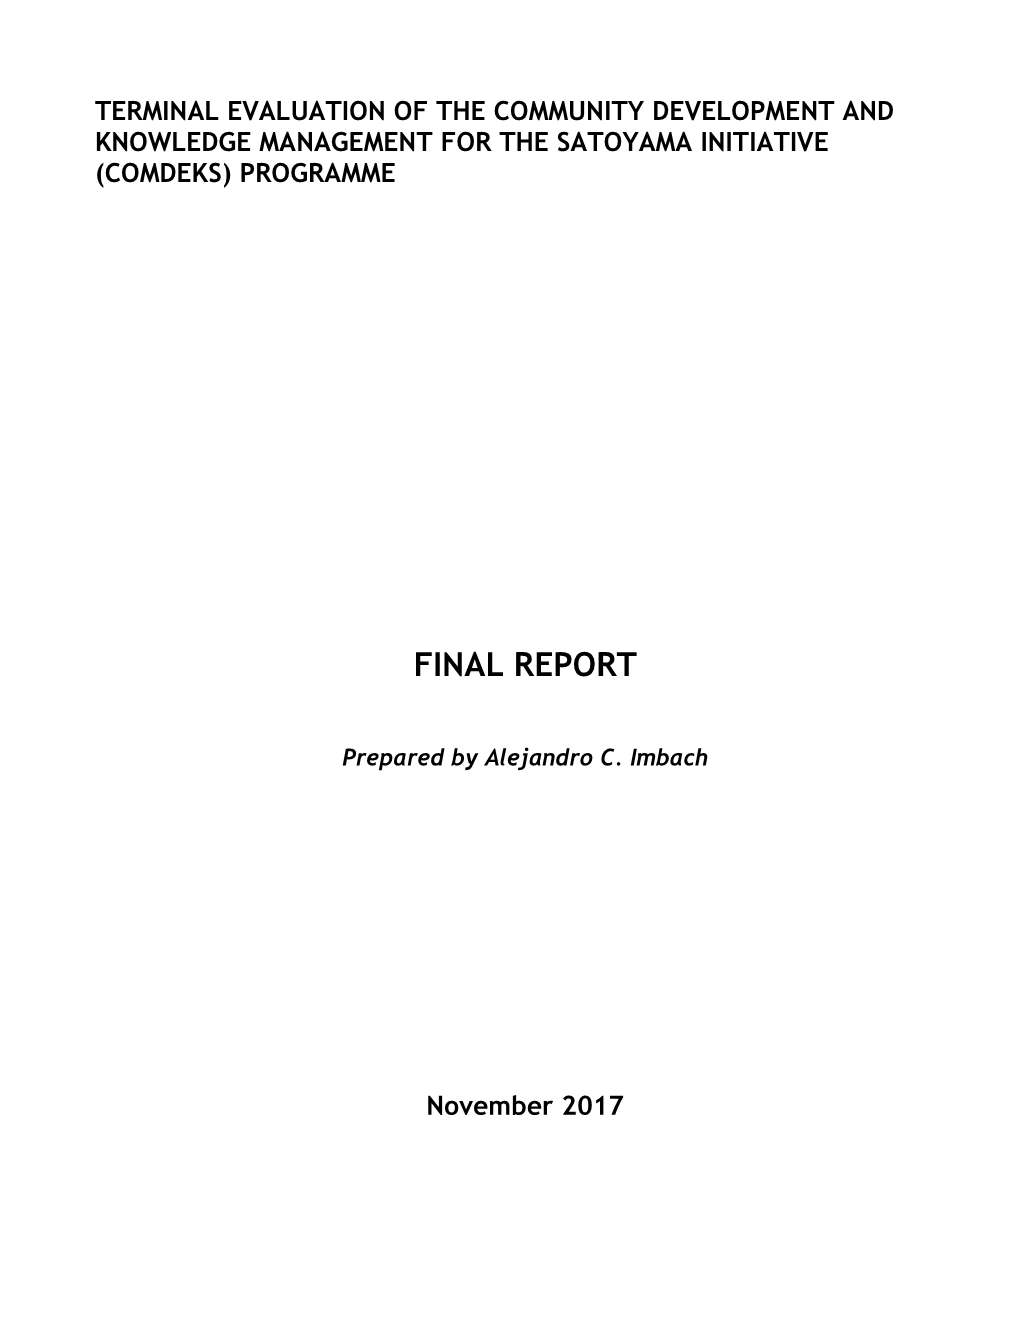 Final Report COMDEKS TE November 2017